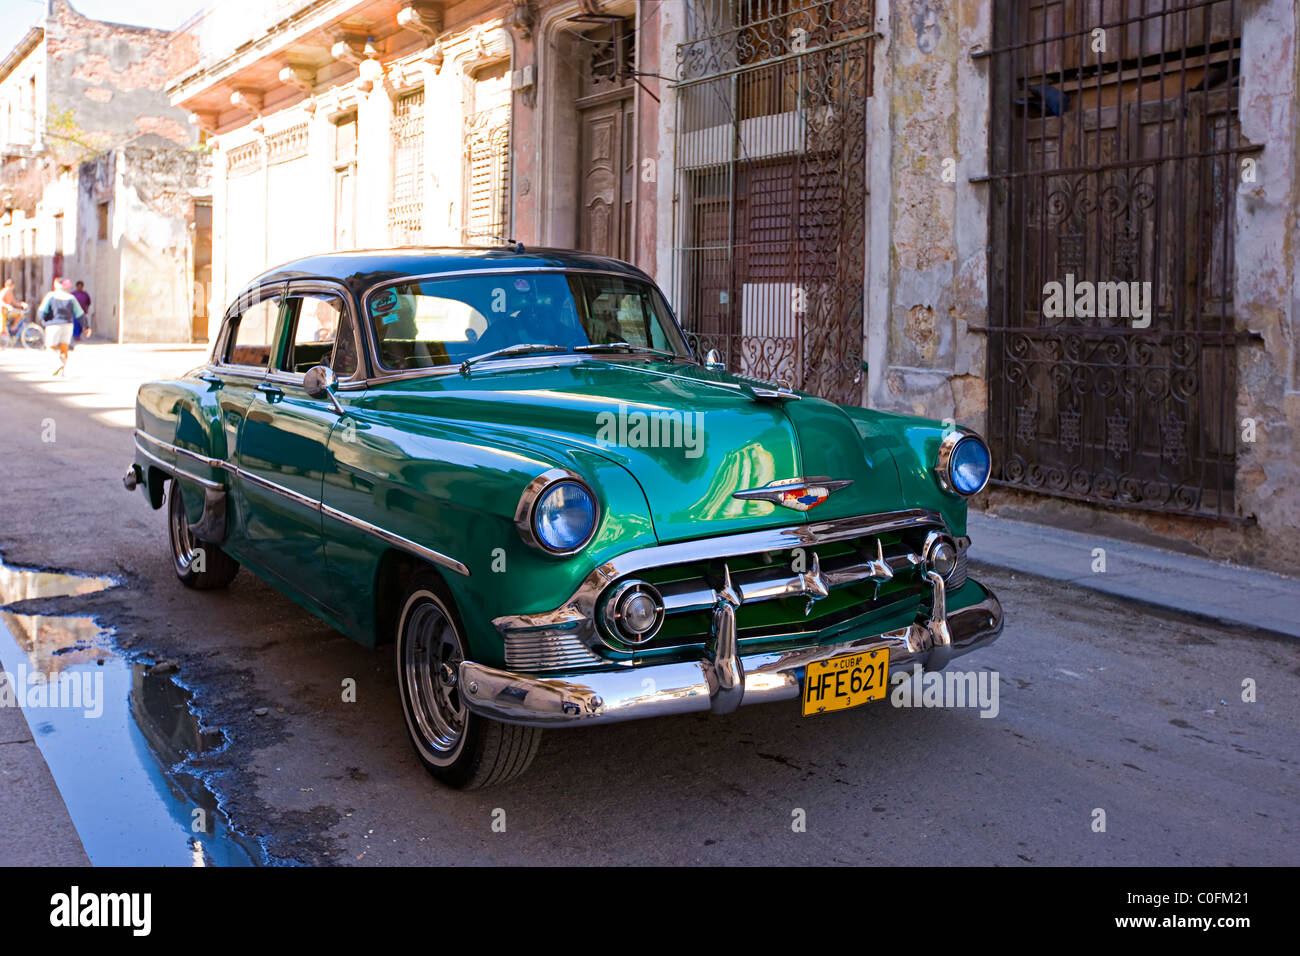 A restored American 1950s Chevrolet car in a side street in Havana  Cuba Stock Photo